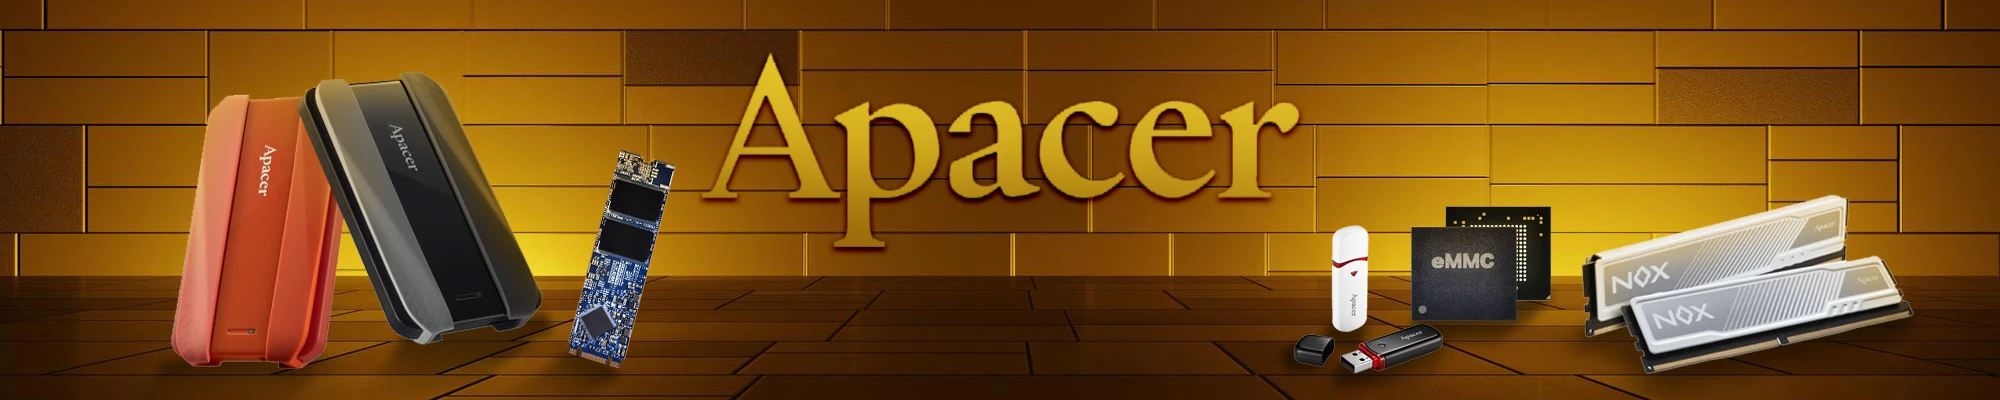 Apacer-baner